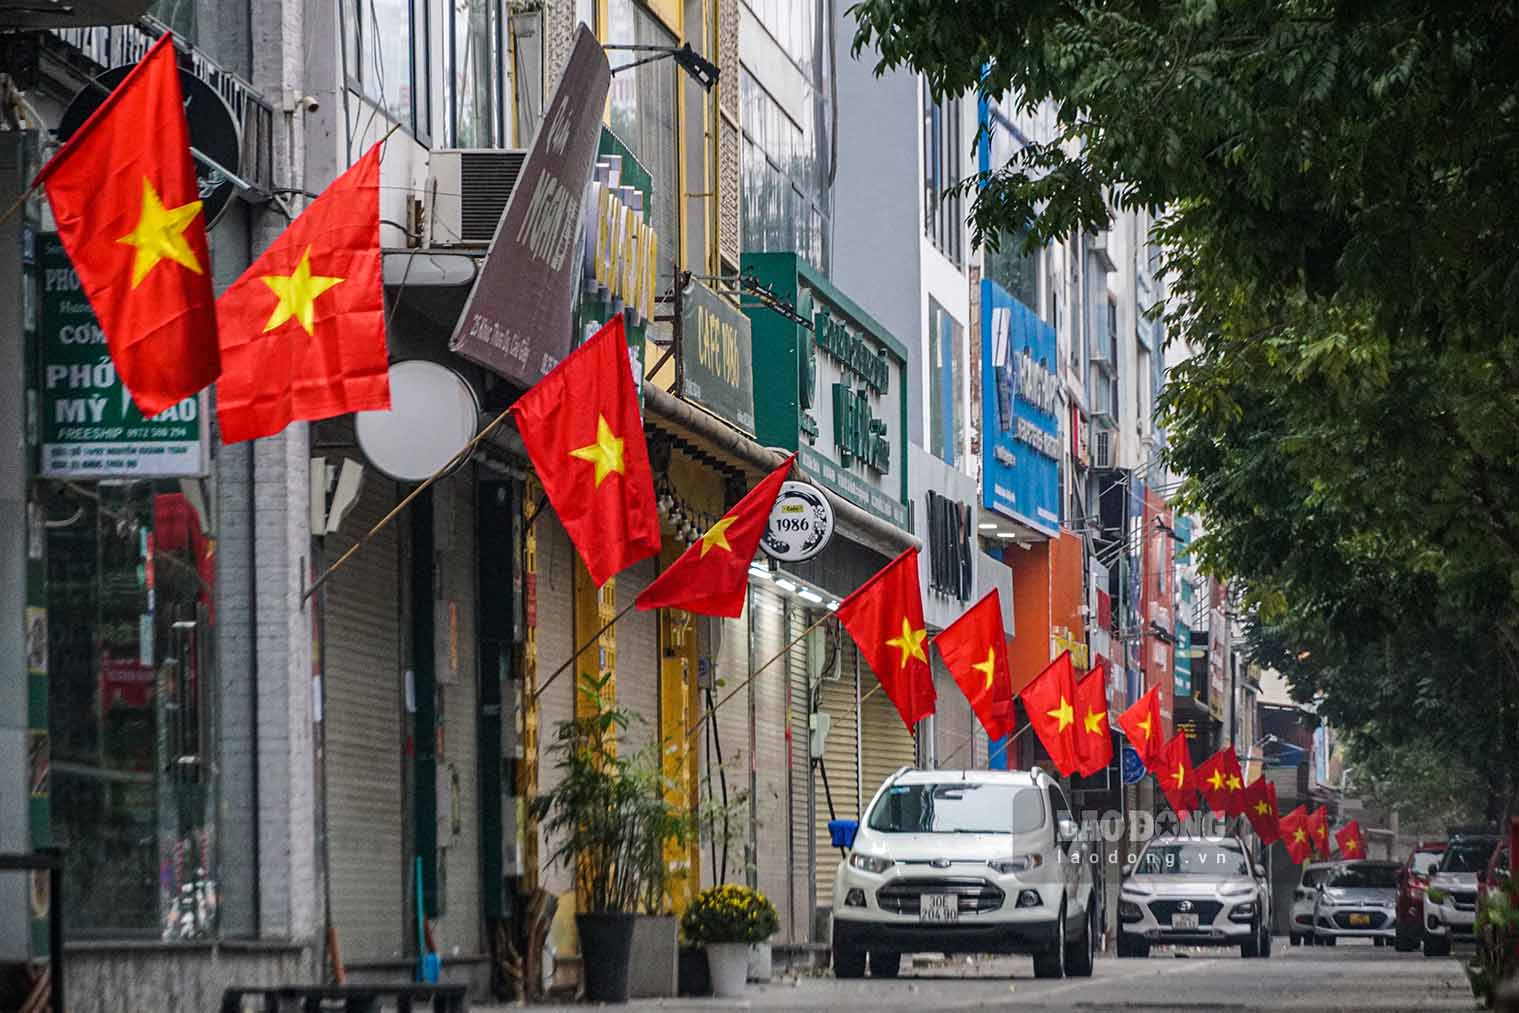 Hàng cờ Tổ quốc đỏ thắm trên một con đường thuộc quận Cầu Giấy.